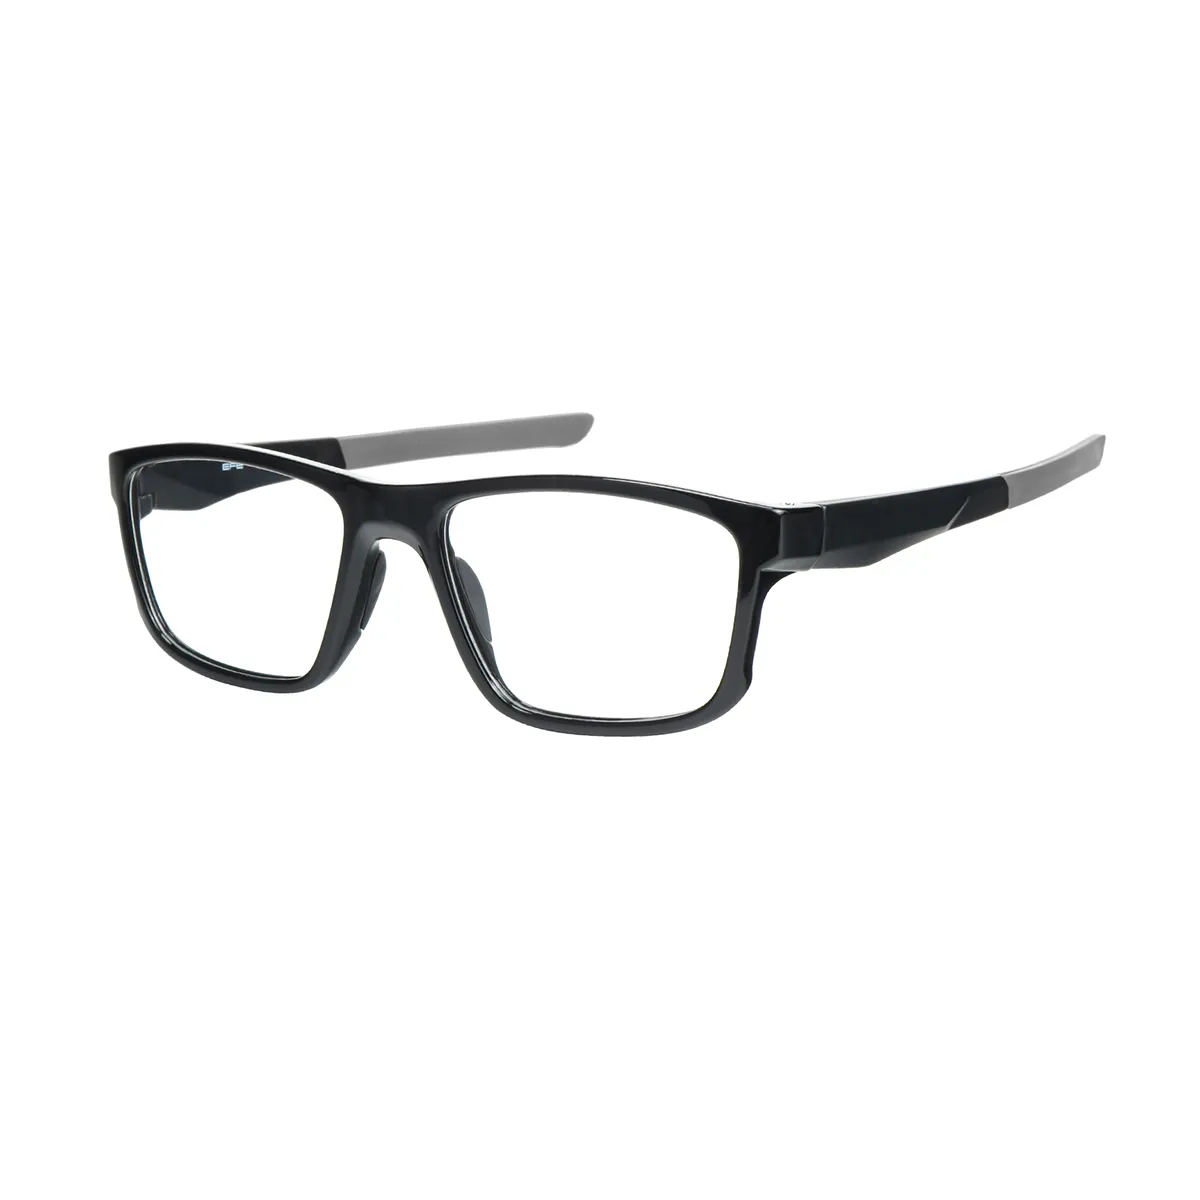 Darwin - Rectangle Black-Gray Glasses for Men